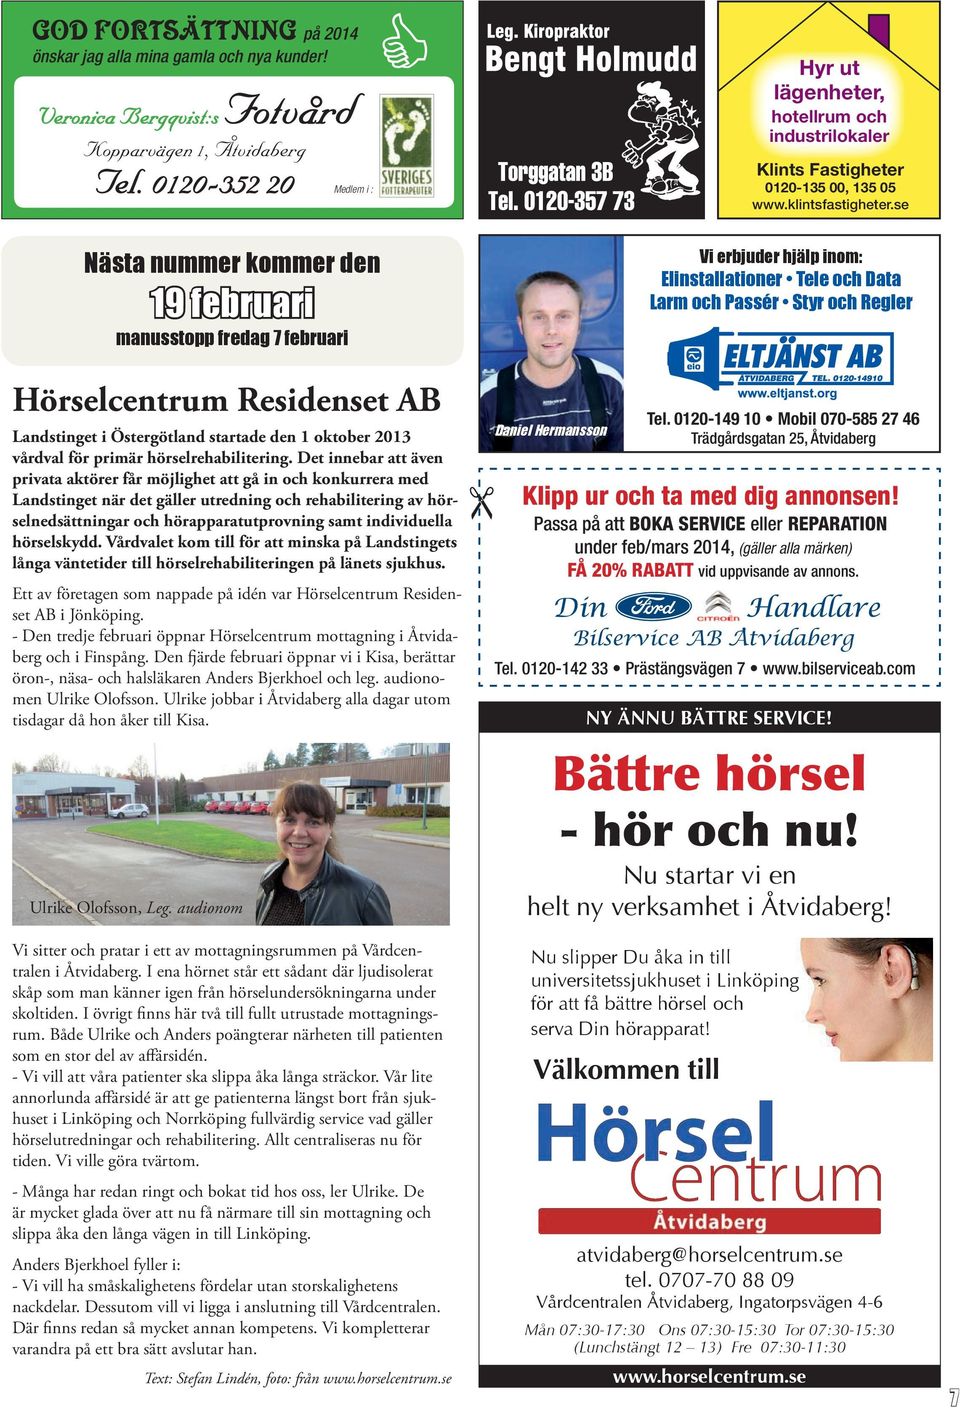 se Nästa nummer kommer den 19 februari manusstopp fredag 7 februari Hörselcentrum Residenset AB Landstinget i Östergötland startade den 1 oktober 2013 vårdval för primär hörselrehabilitering.